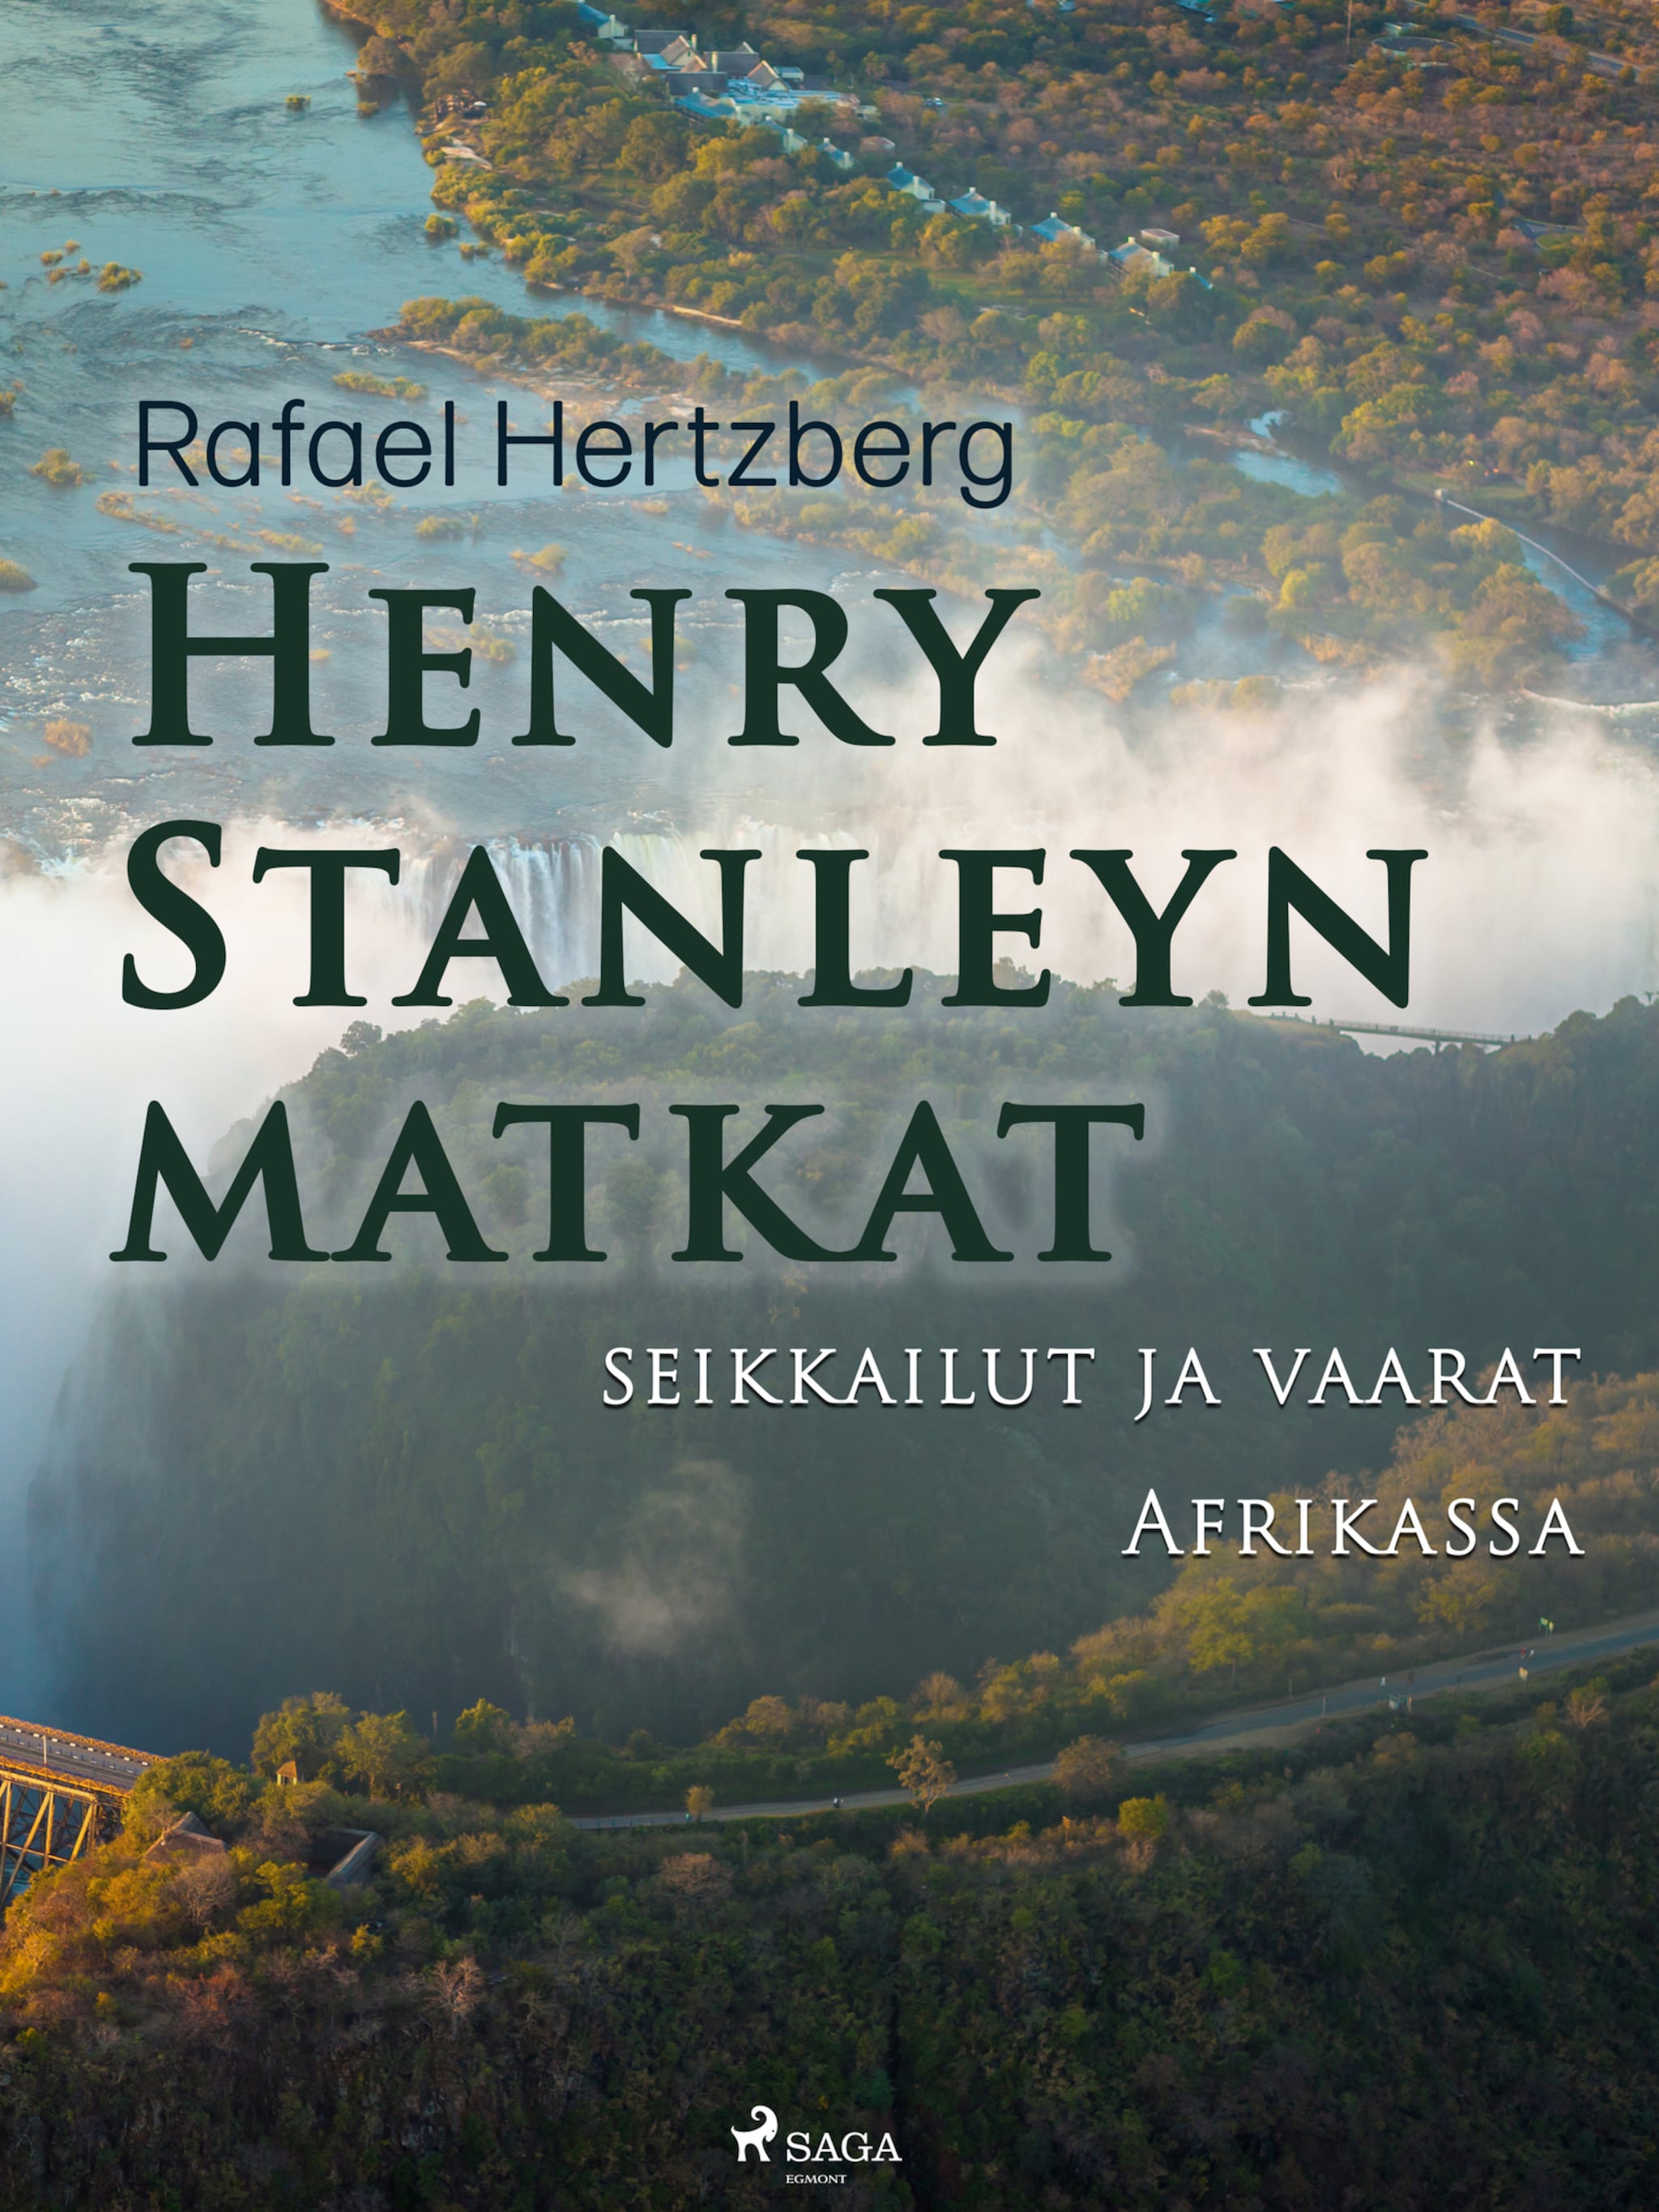 Henry Stanleyn matkat, seikkailut ja vaarat Afrikassa ilmaiseksi